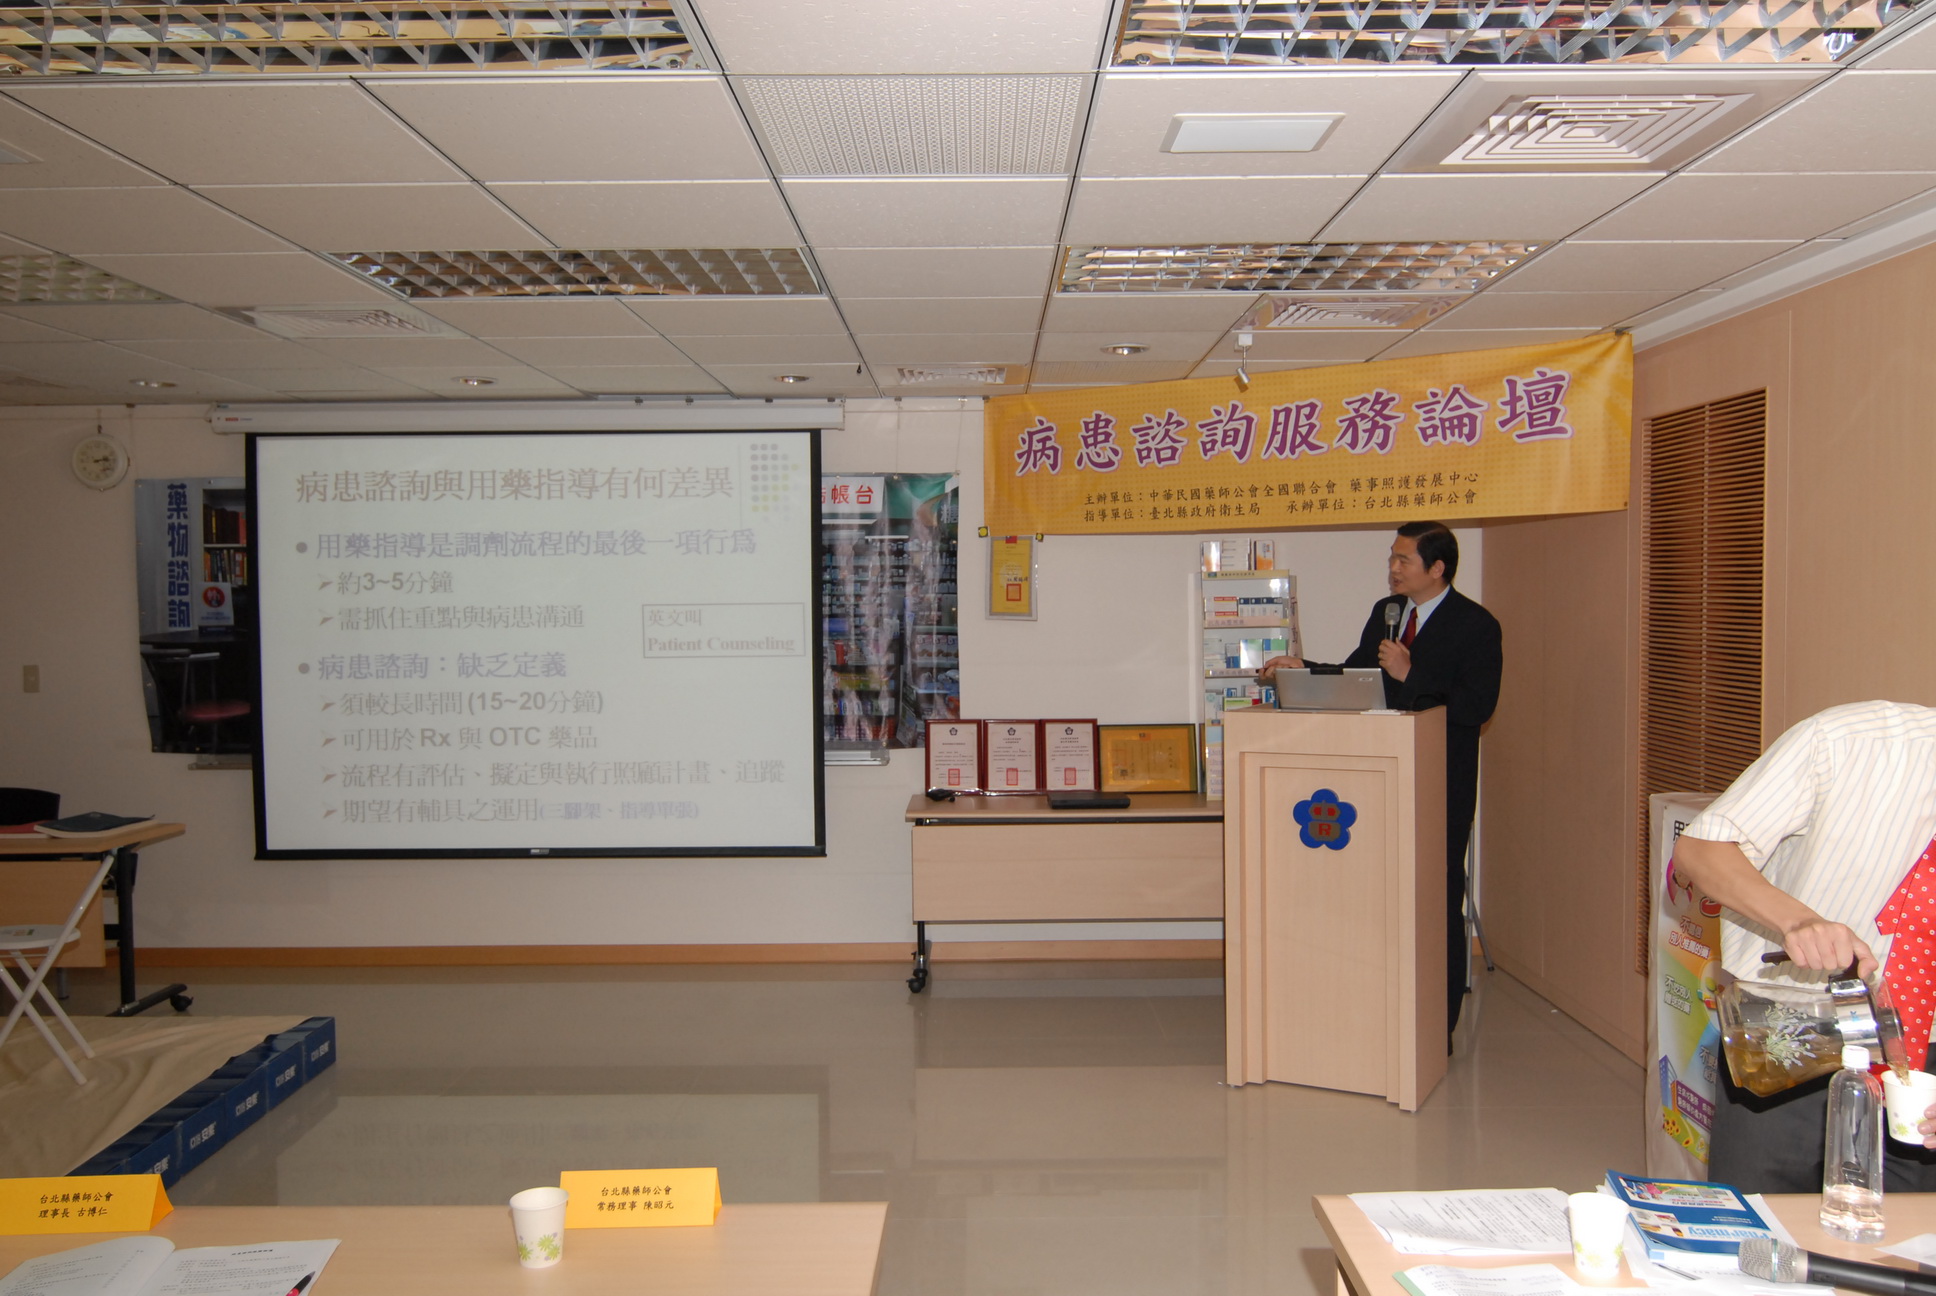 會議開始，由譚延輝執行長進行演講，題目為「病患諮詢與溝通技巧」